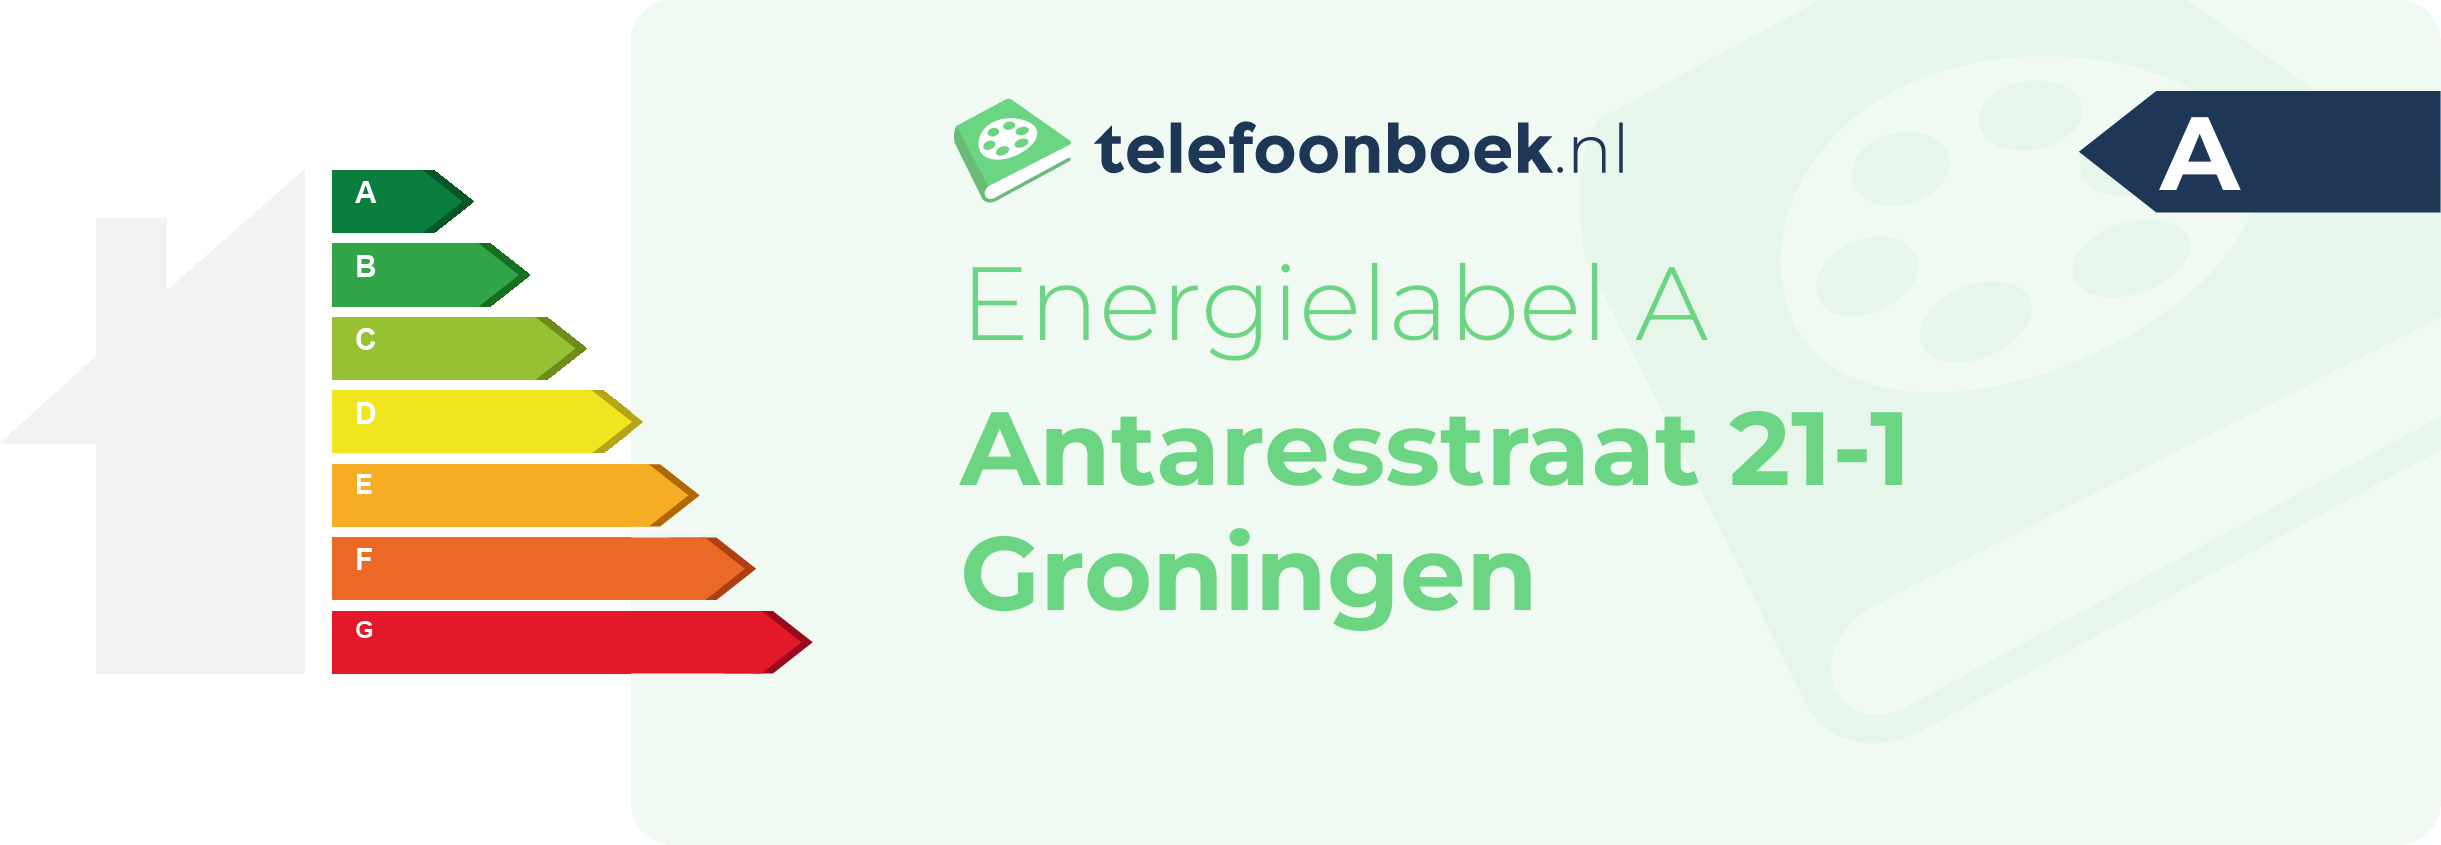 Energielabel Antaresstraat 21-1 Groningen